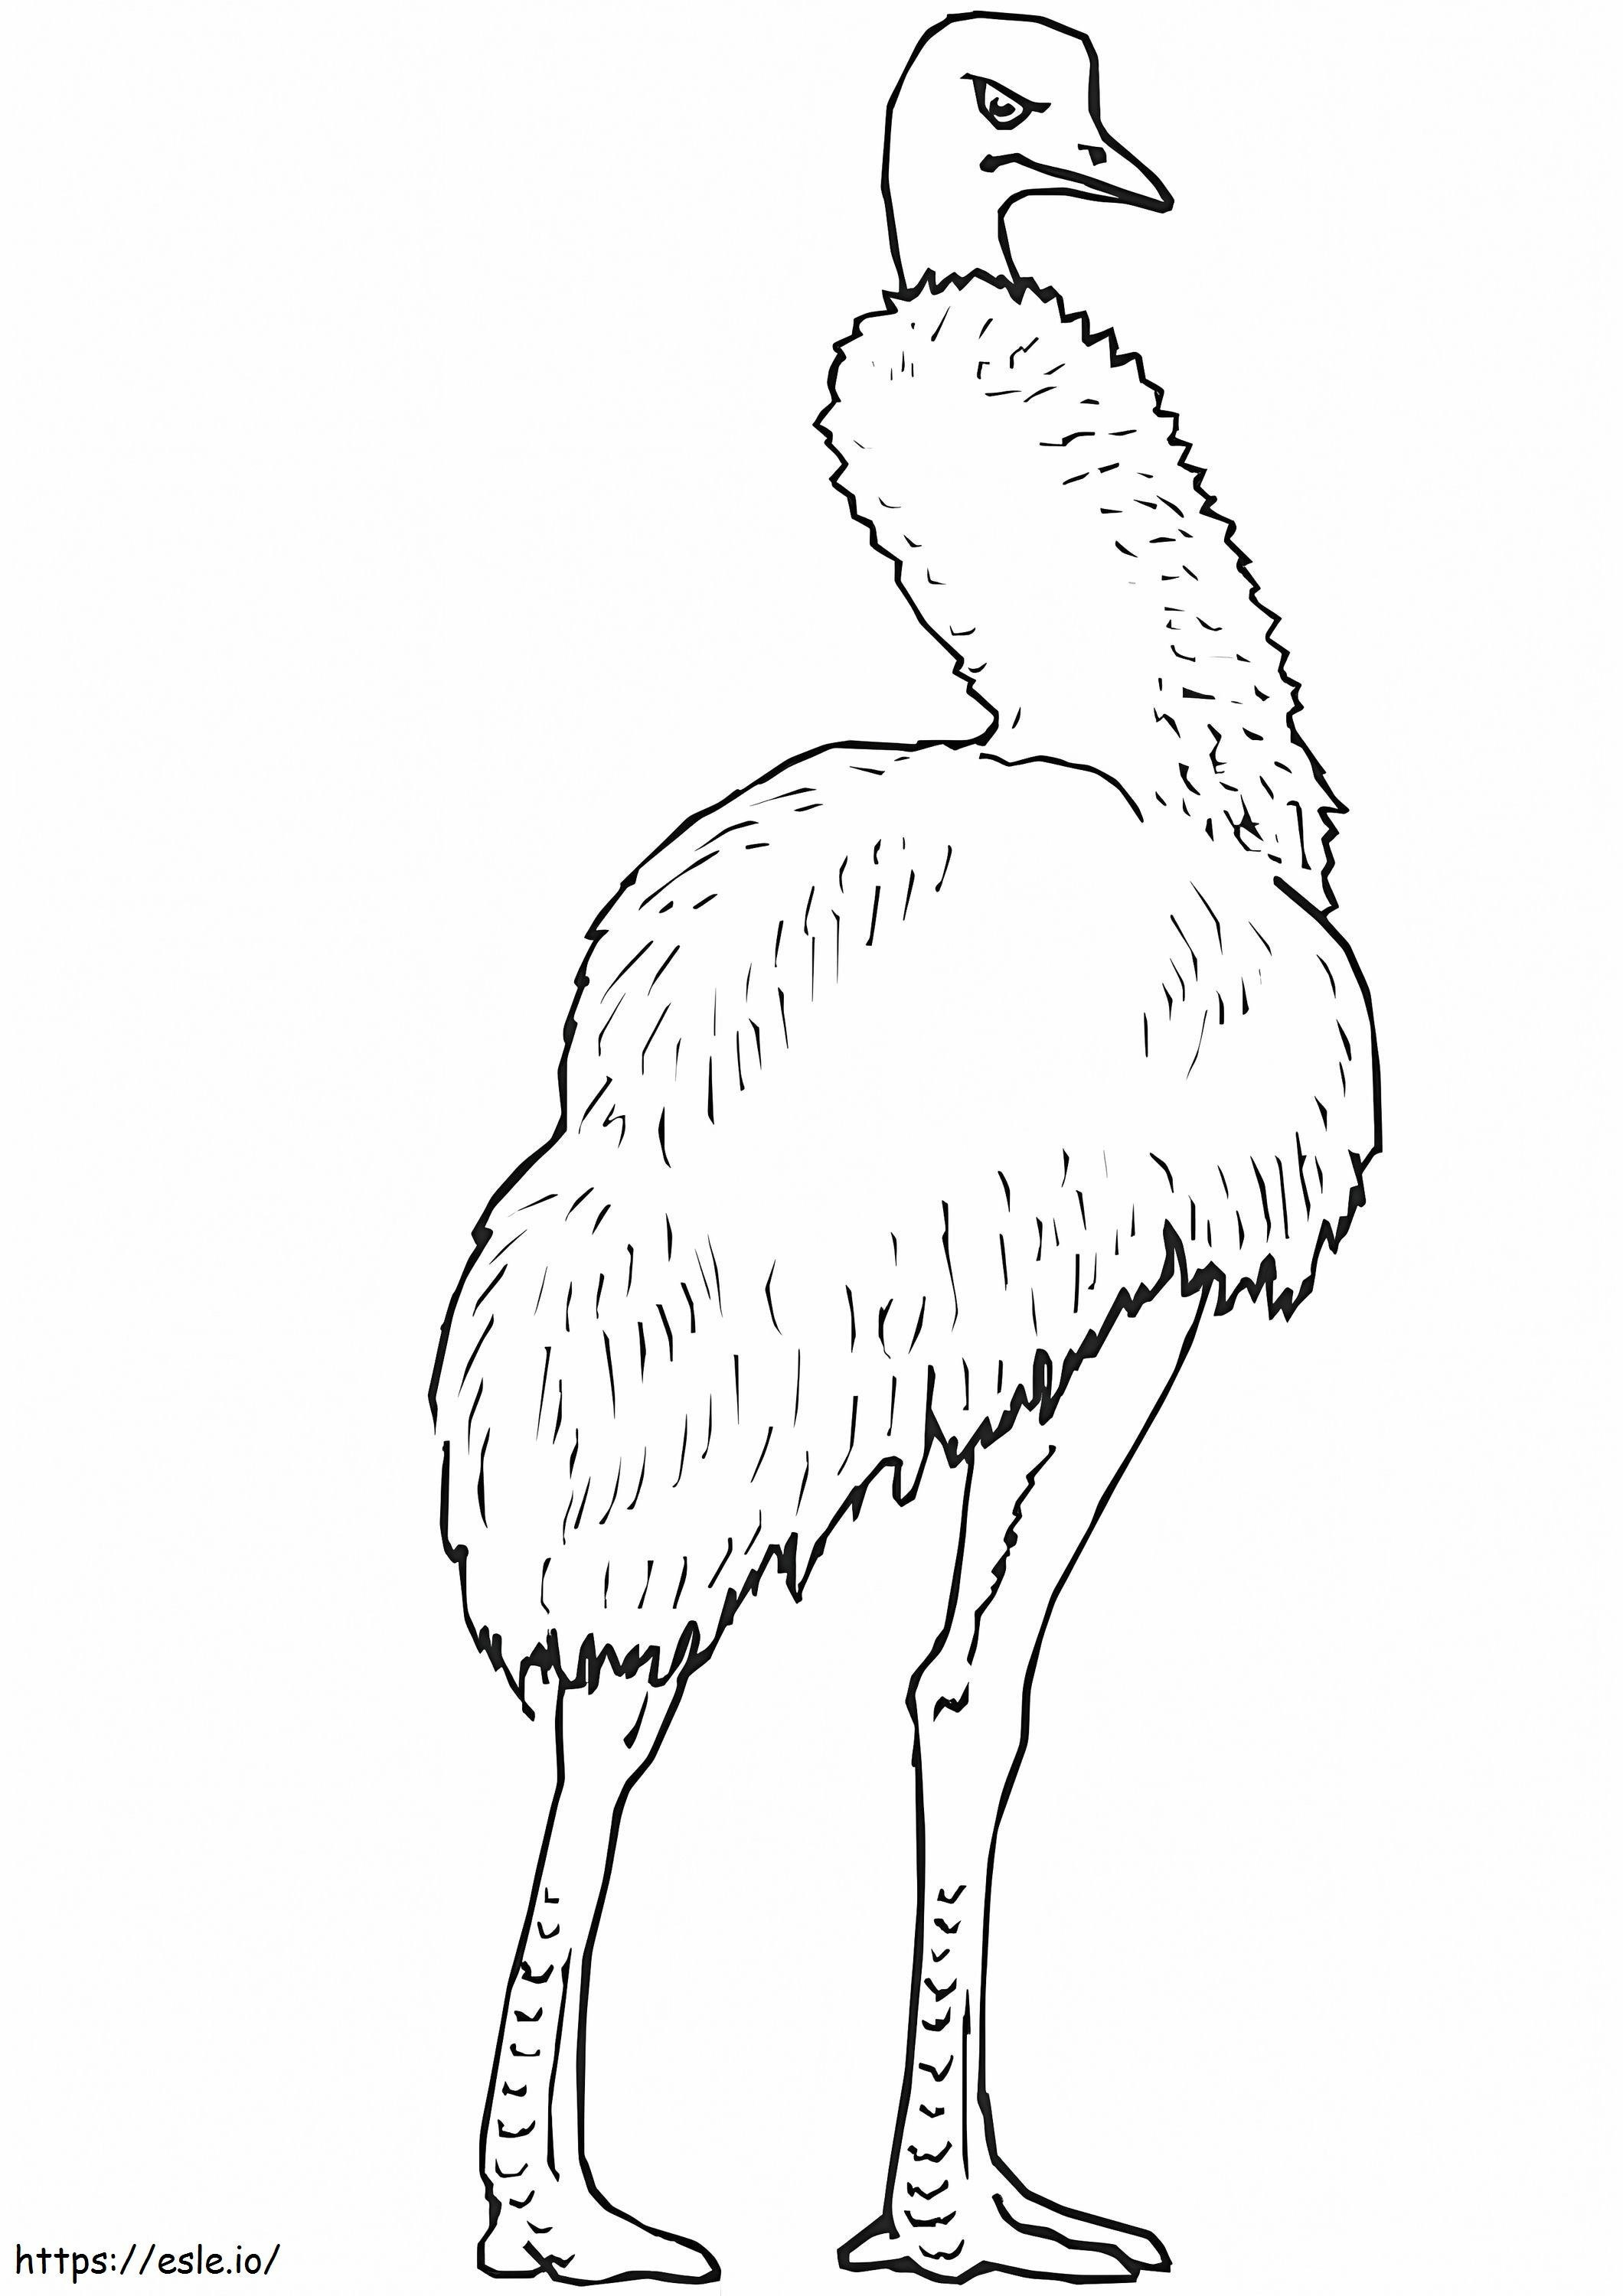 L'emù più grande da colorare